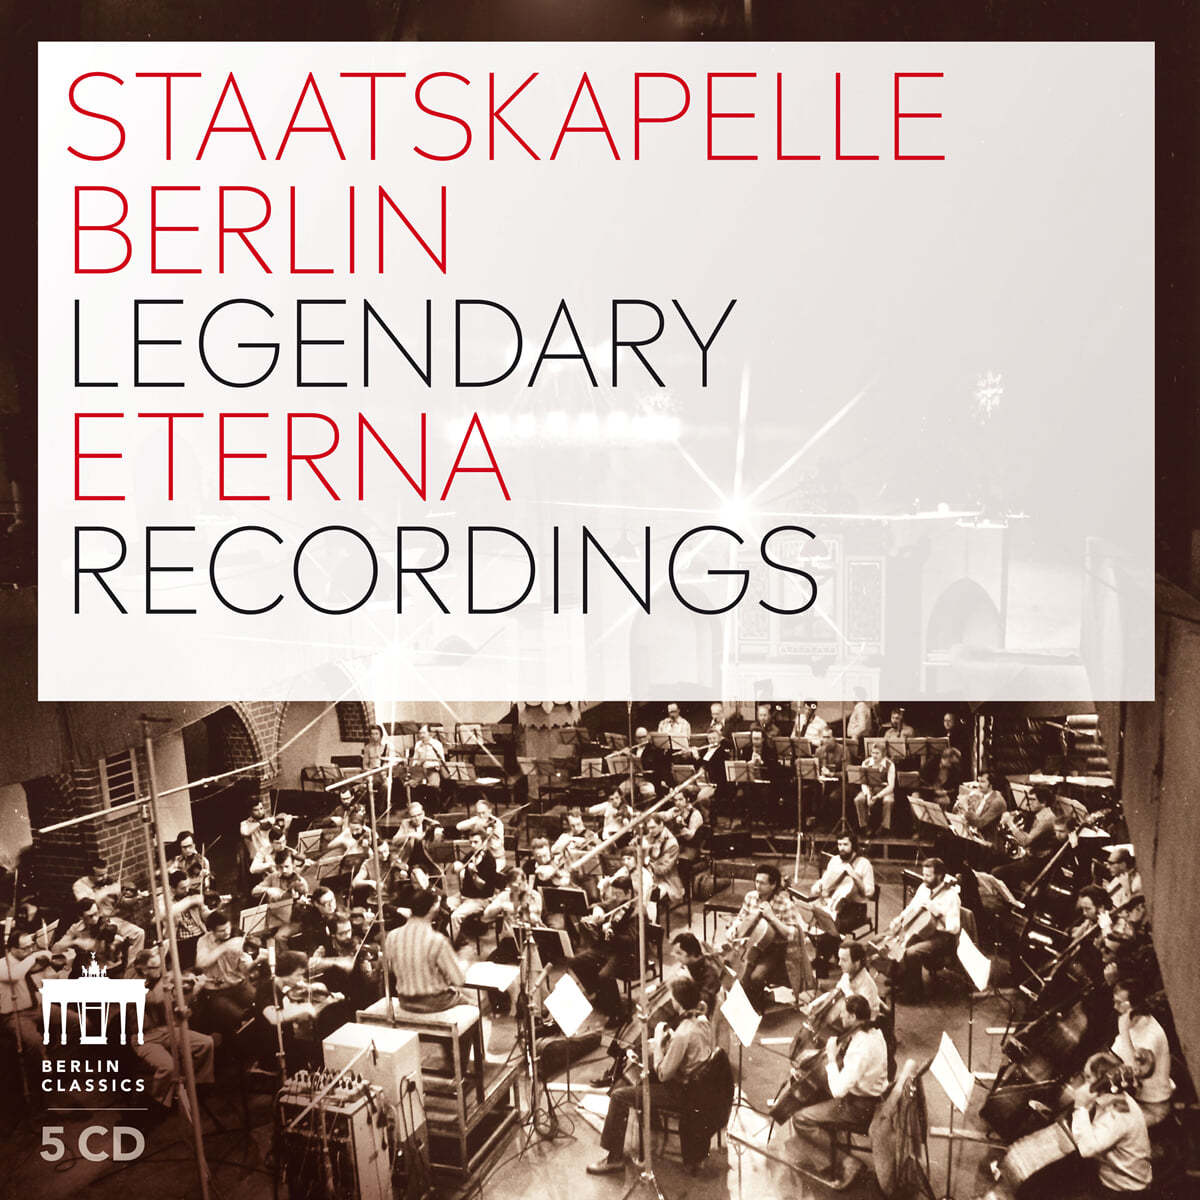 슈타츠카펠레 베를린의 전설적인 레코딩 (Staatskapelle Berlin - Legendary Eterna Recordings)